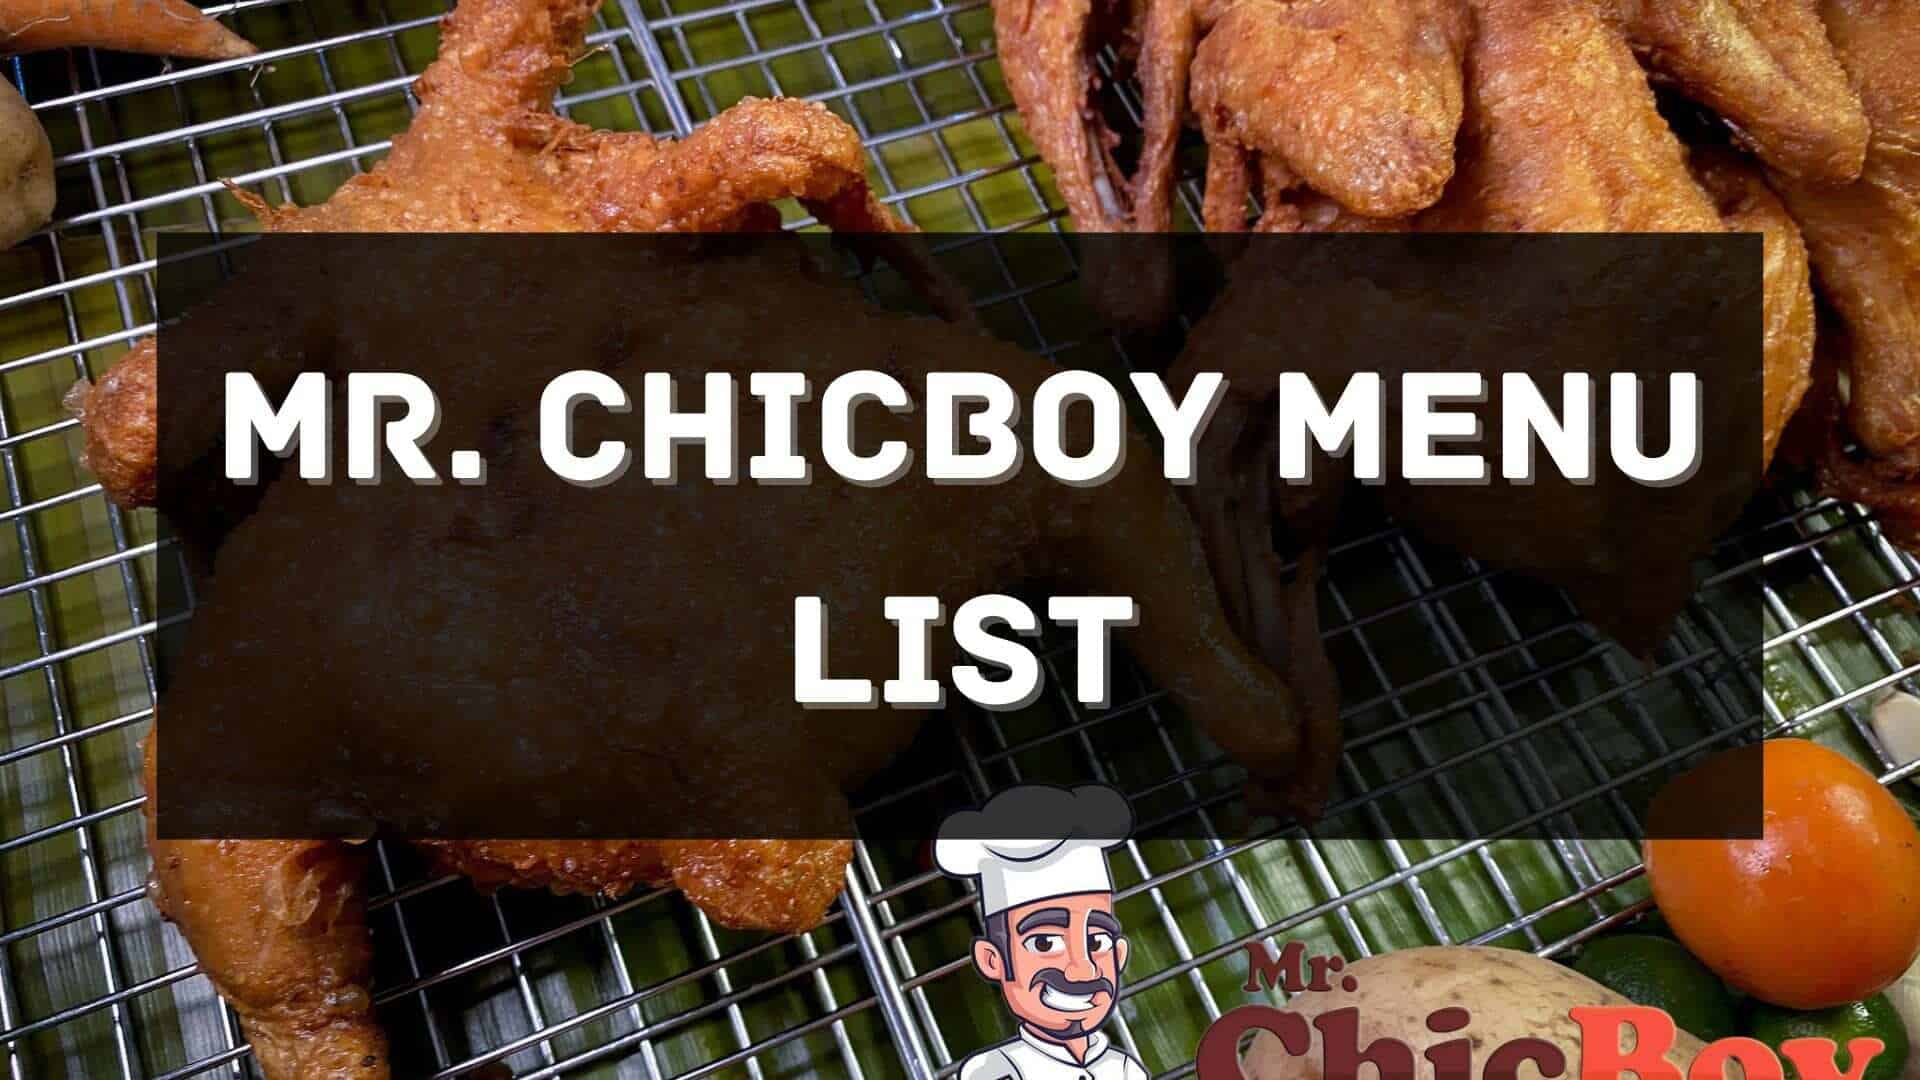 mr. chicboy menu prices philippines